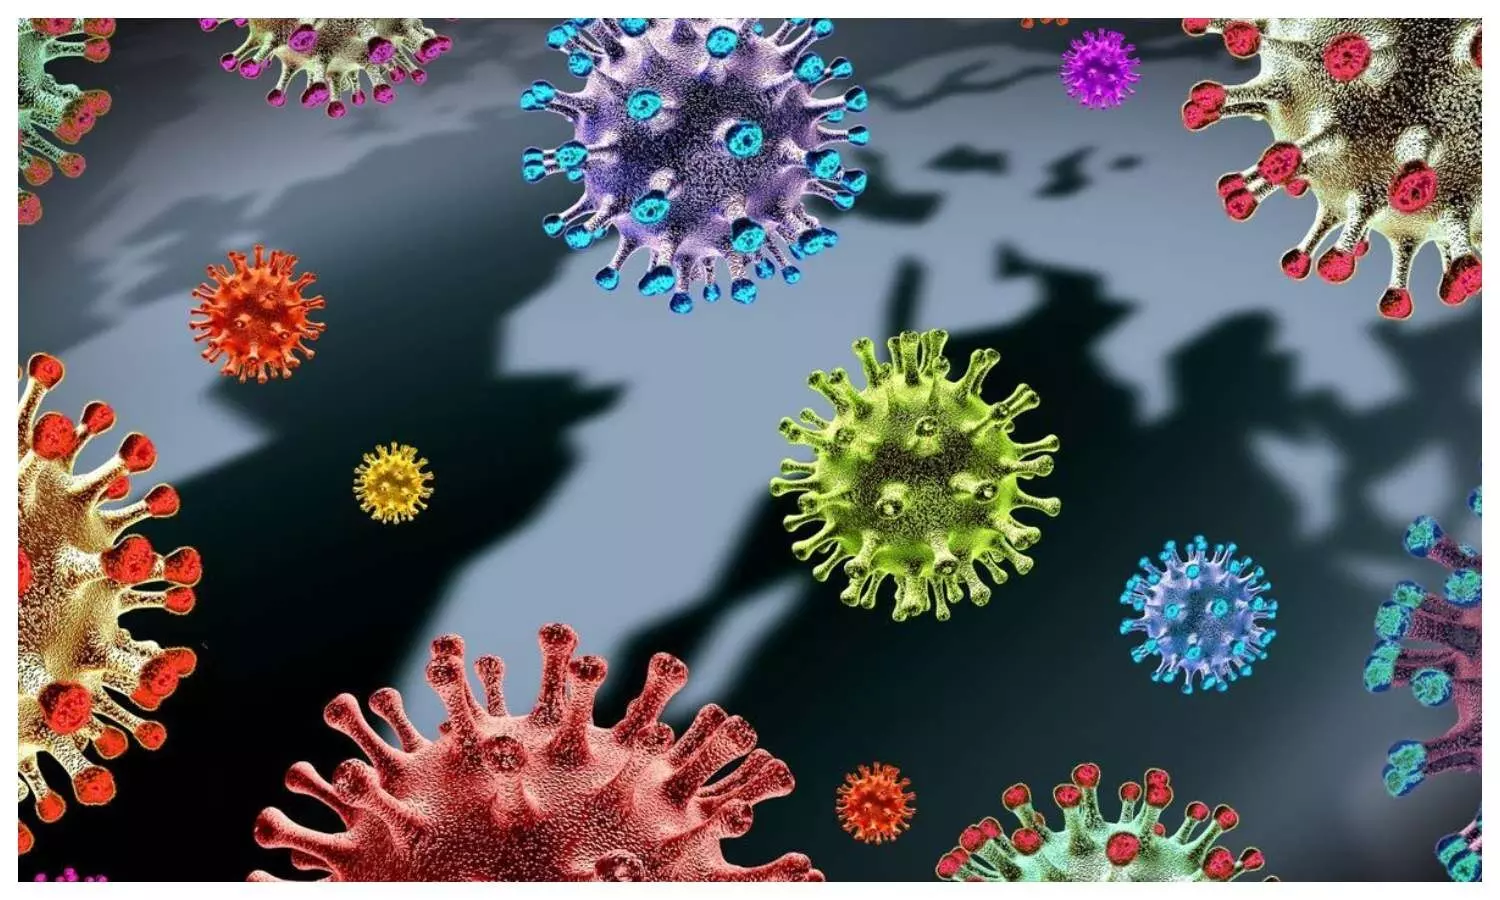 Omicron BQ 1 virus in India